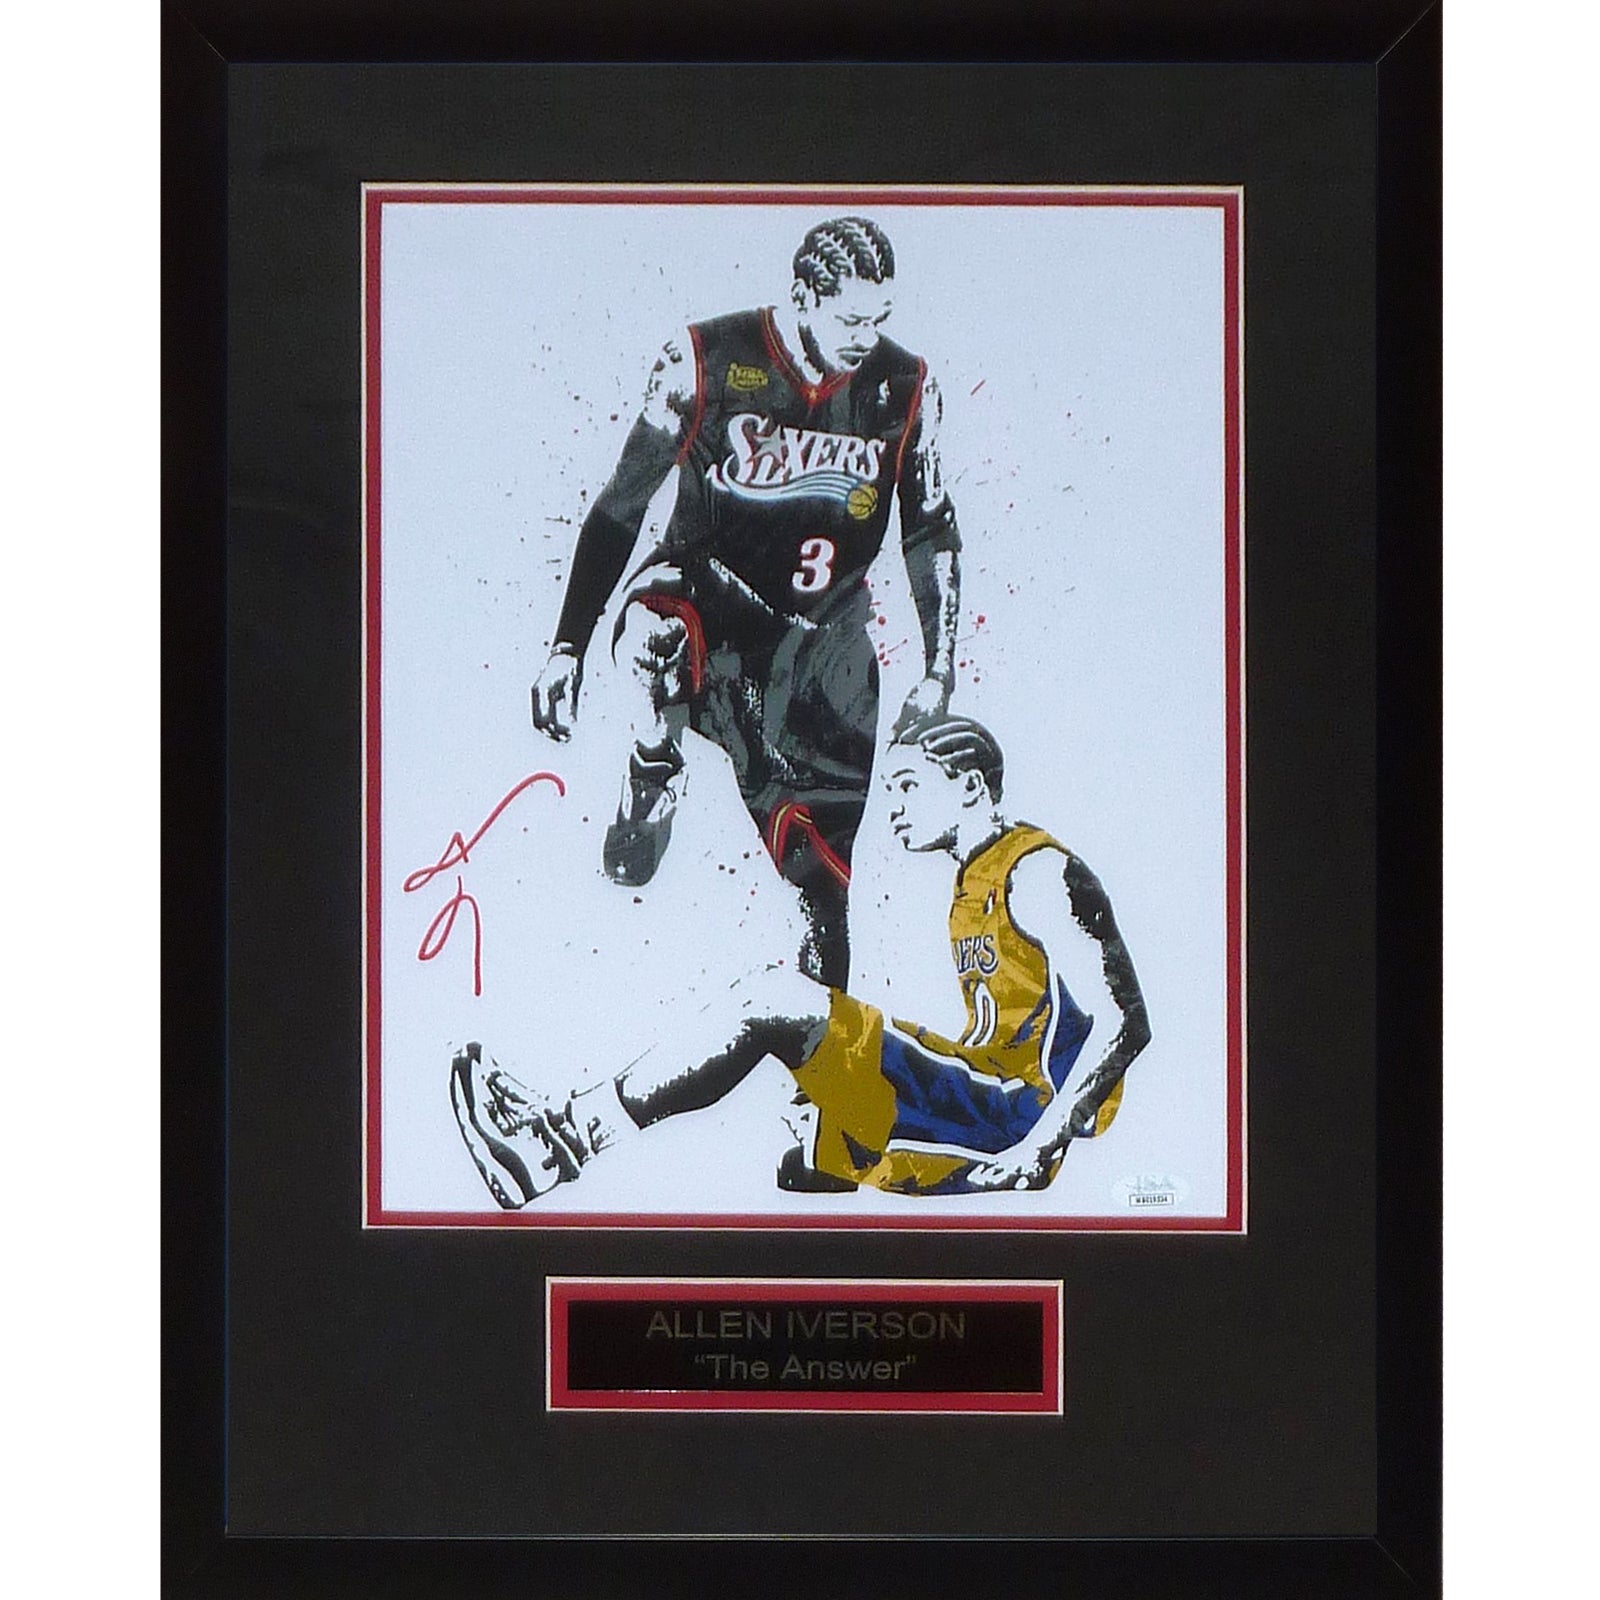 Allen Iverson Autographed Philadelphia 76ers (Stepover Splash Art) Deluxe Framed 11x14 Poster - Beckett